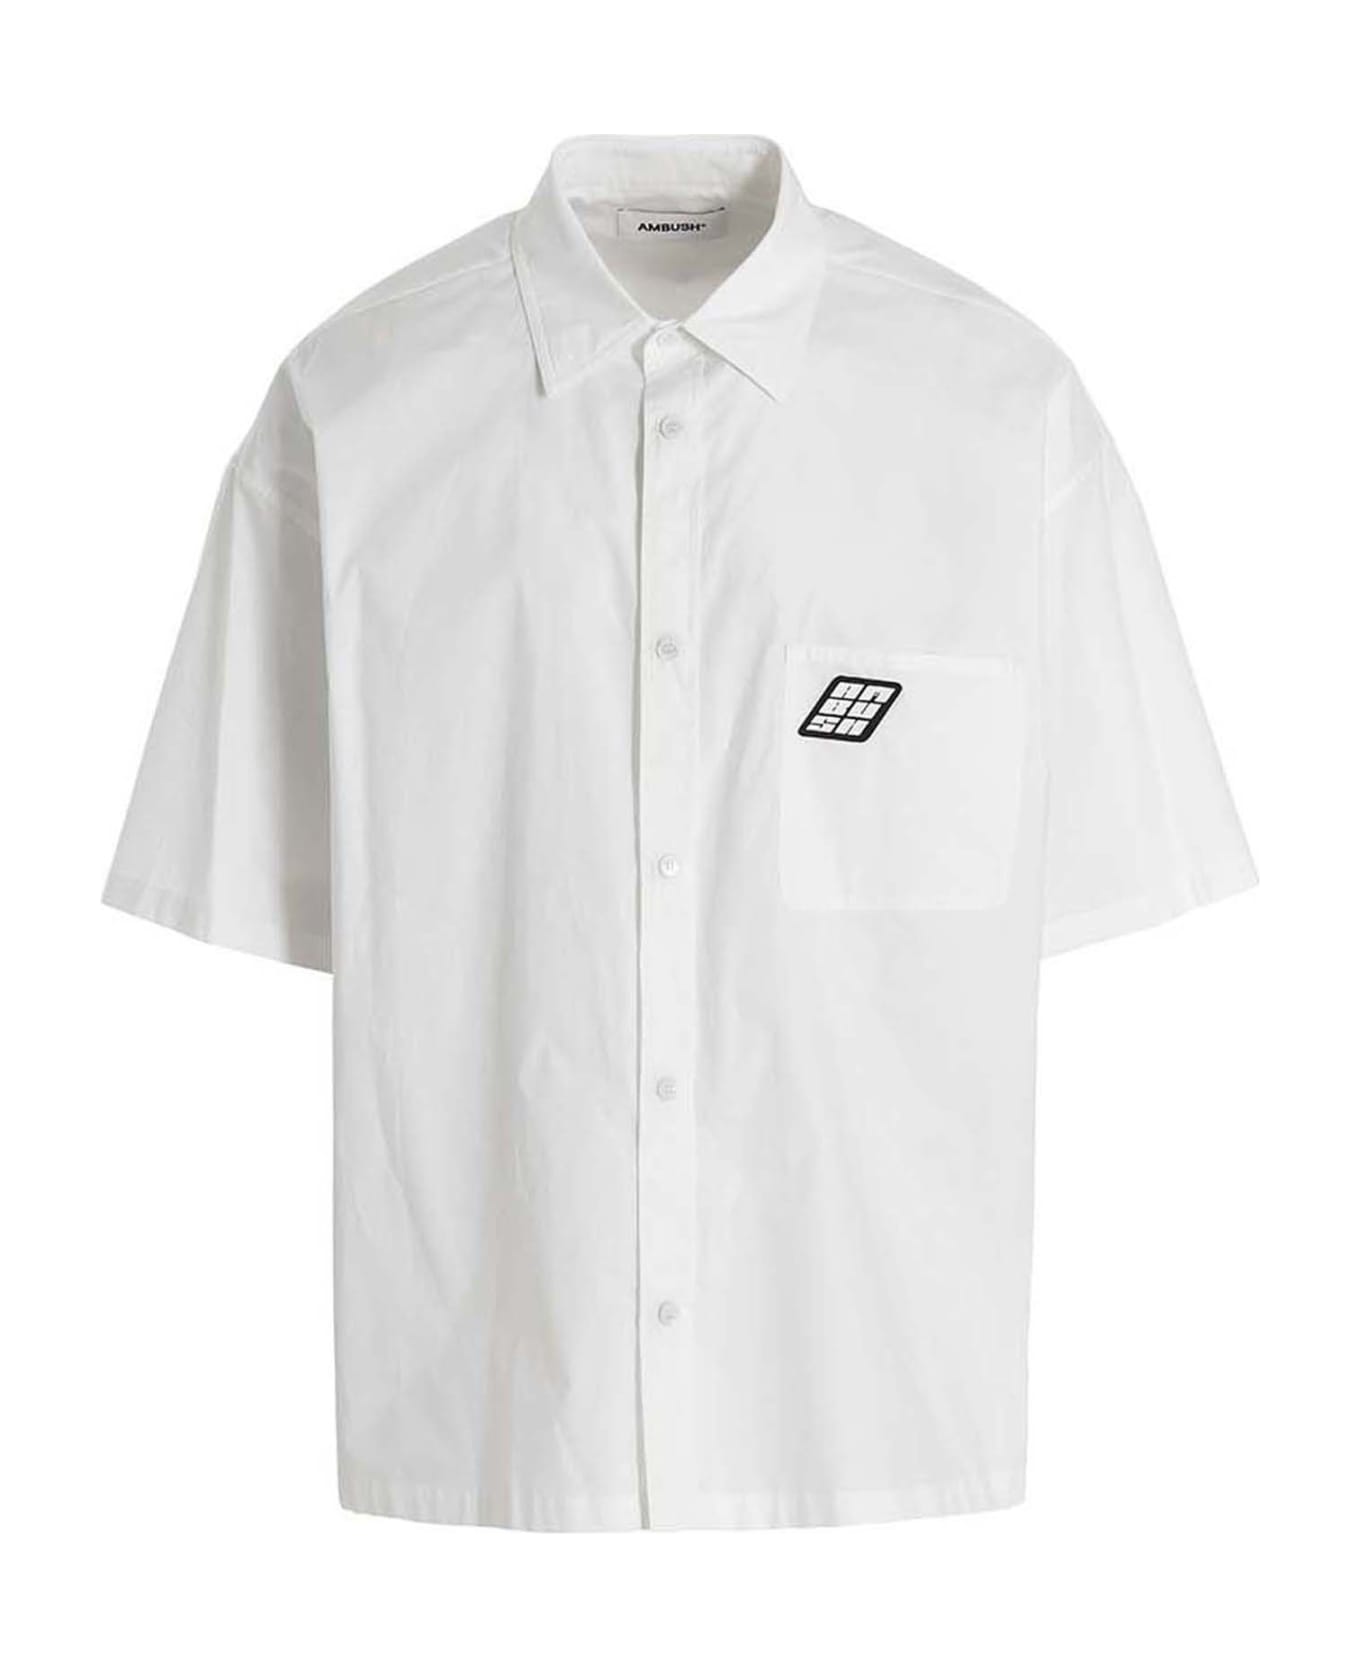 AMBUSH Logo Shirt - White